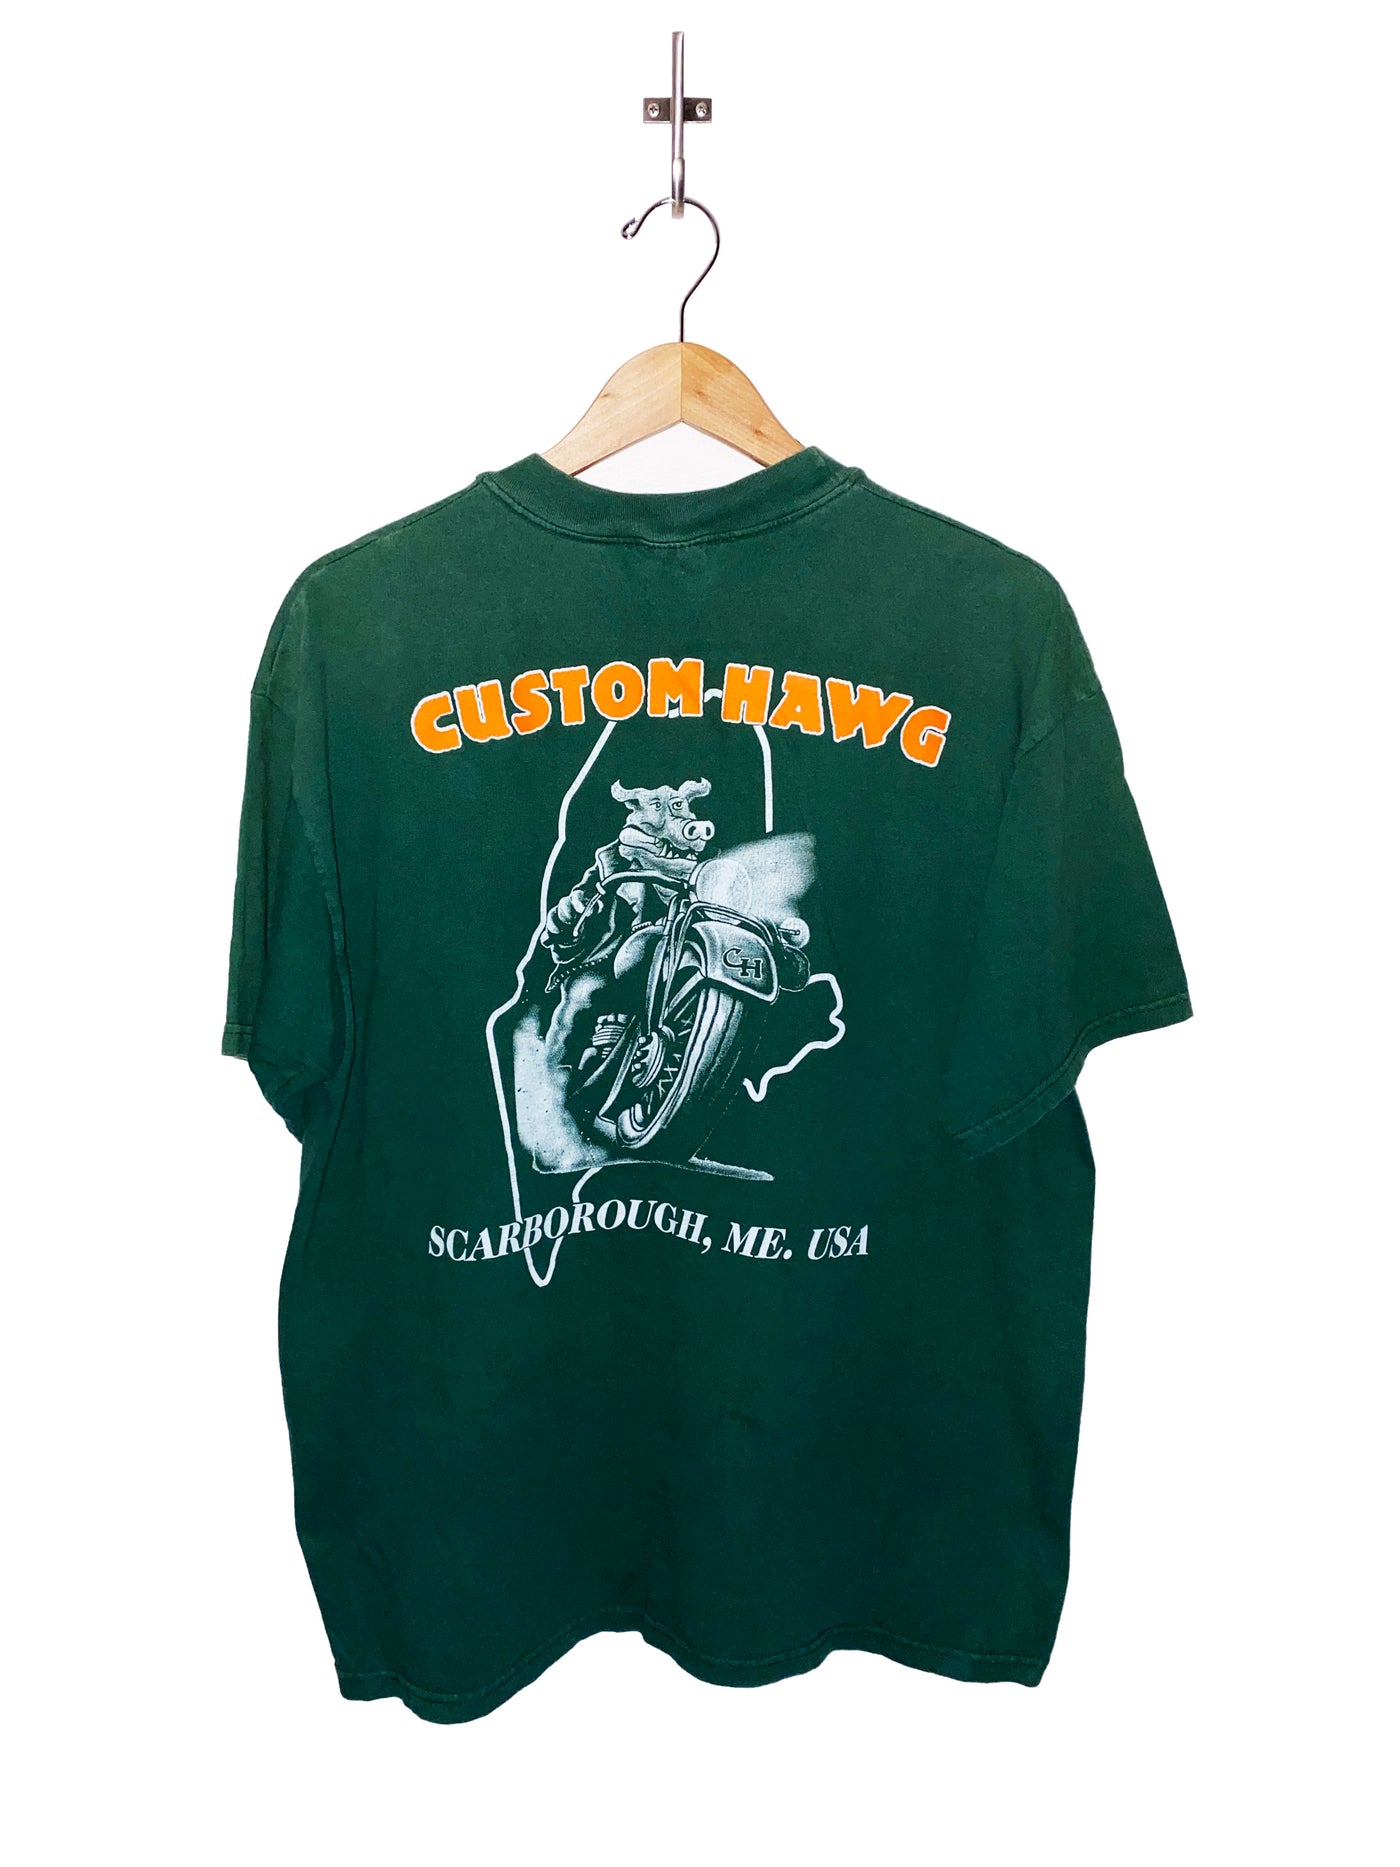 Vintage Custom Hawg T-Shirt